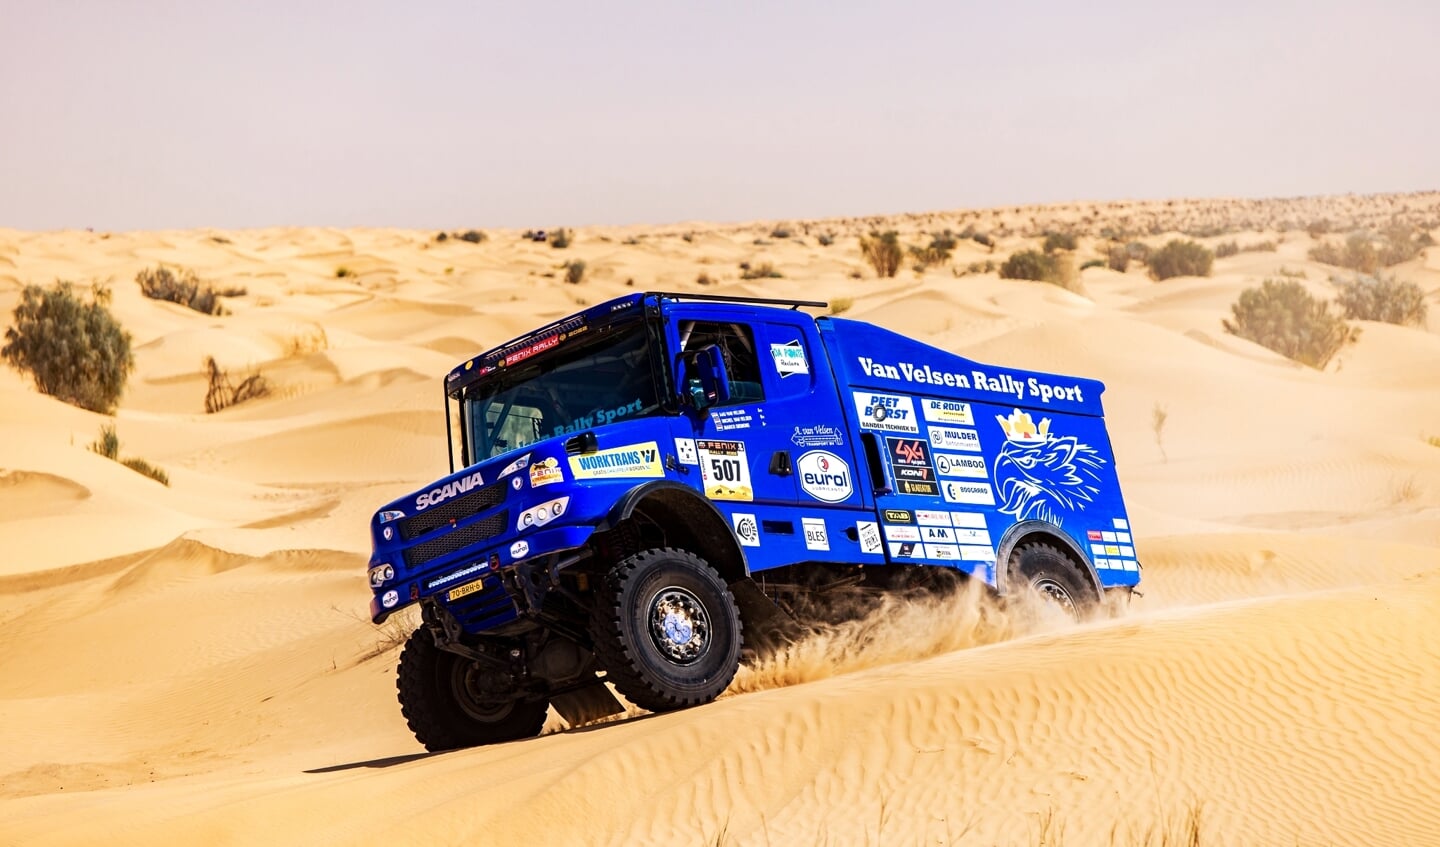 Op woensdag tijdens de zandstorm in de woestijn, werd de eerste van in totaal drie stages gewonnen (RBI Media / Andrius Laucius).